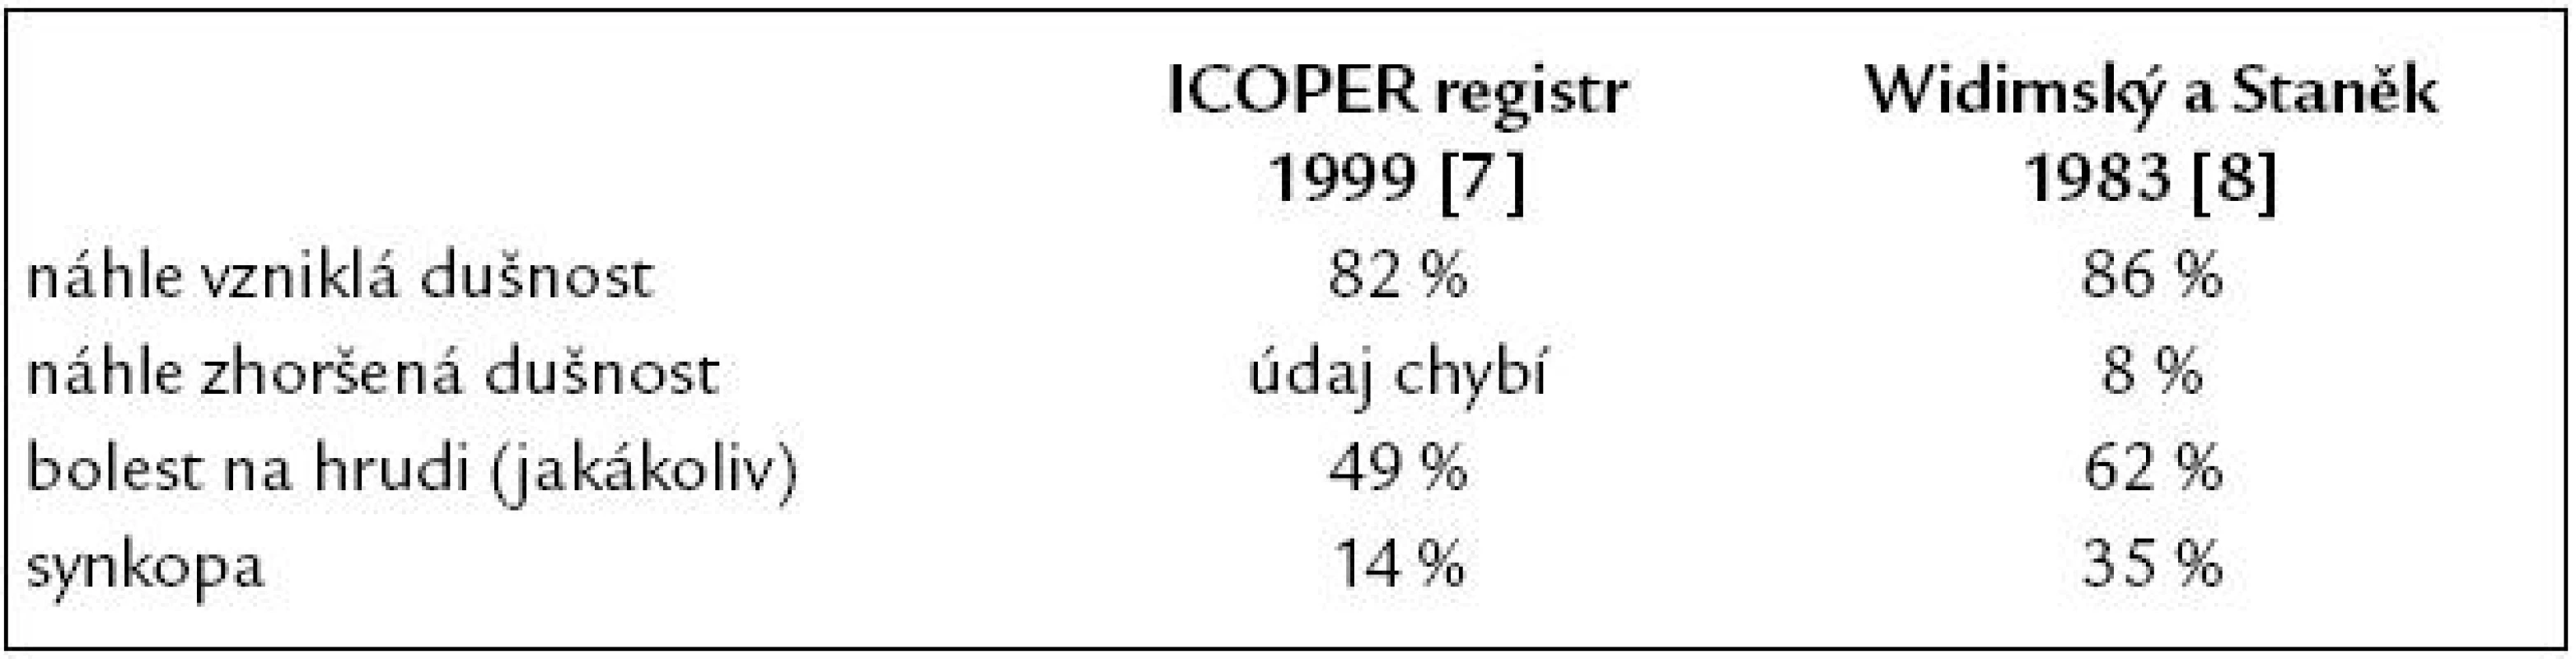 Nejčastější klinické symptomy akutní plicní embolie ve studii ICOPER v porovnání s našimi dřívějšími údaji z koronární jednotky IKEM.